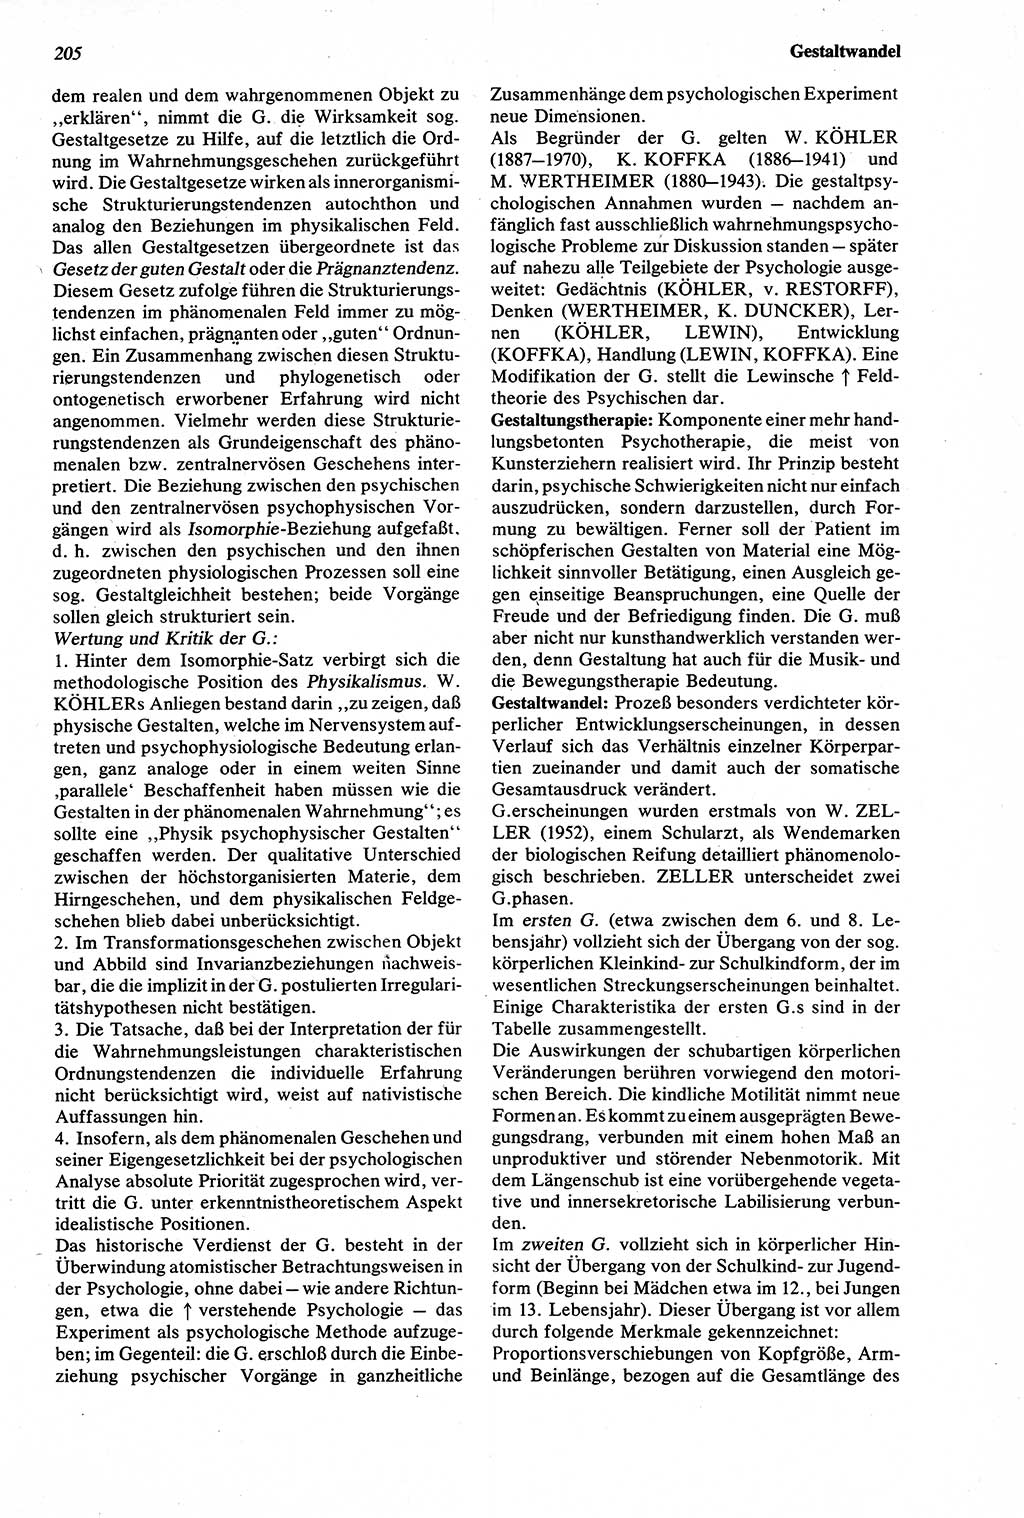 Wörterbuch der Psychologie [Deutsche Demokratische Republik (DDR)] 1976, Seite 205 (Wb. Psych. DDR 1976, S. 205)